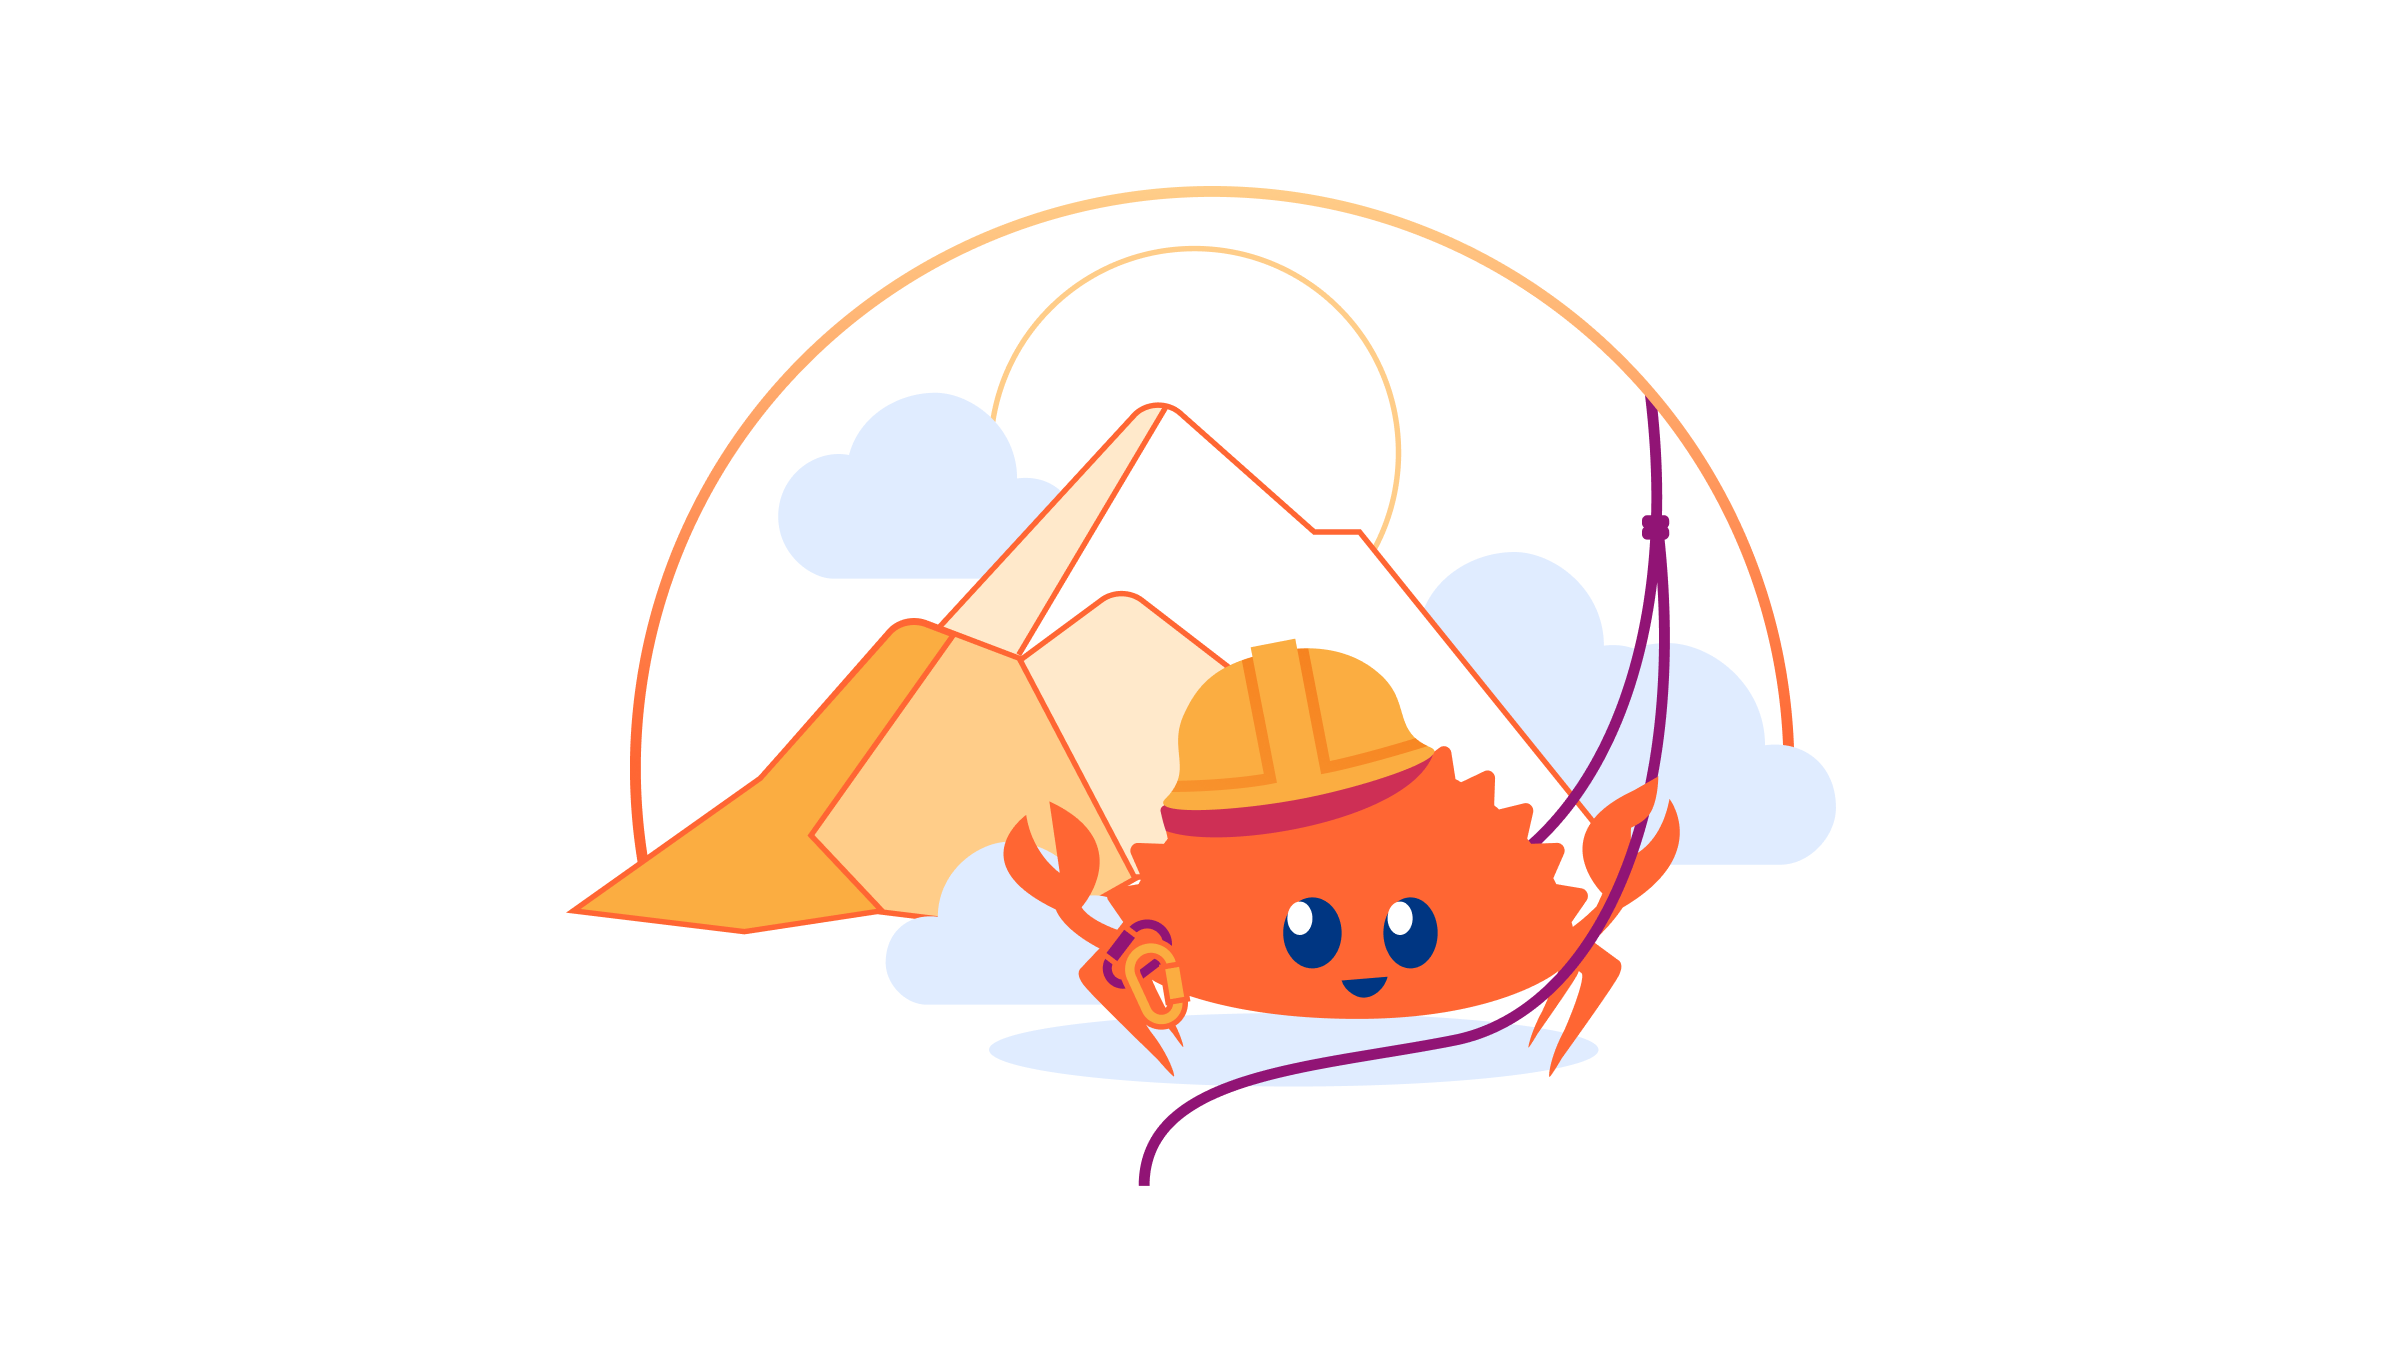 Pingora 오픈 소싱: 프로그래밍 가능한 네트워크 서비스 구축을 위한 Cloudflare의 Rust 프레임워크